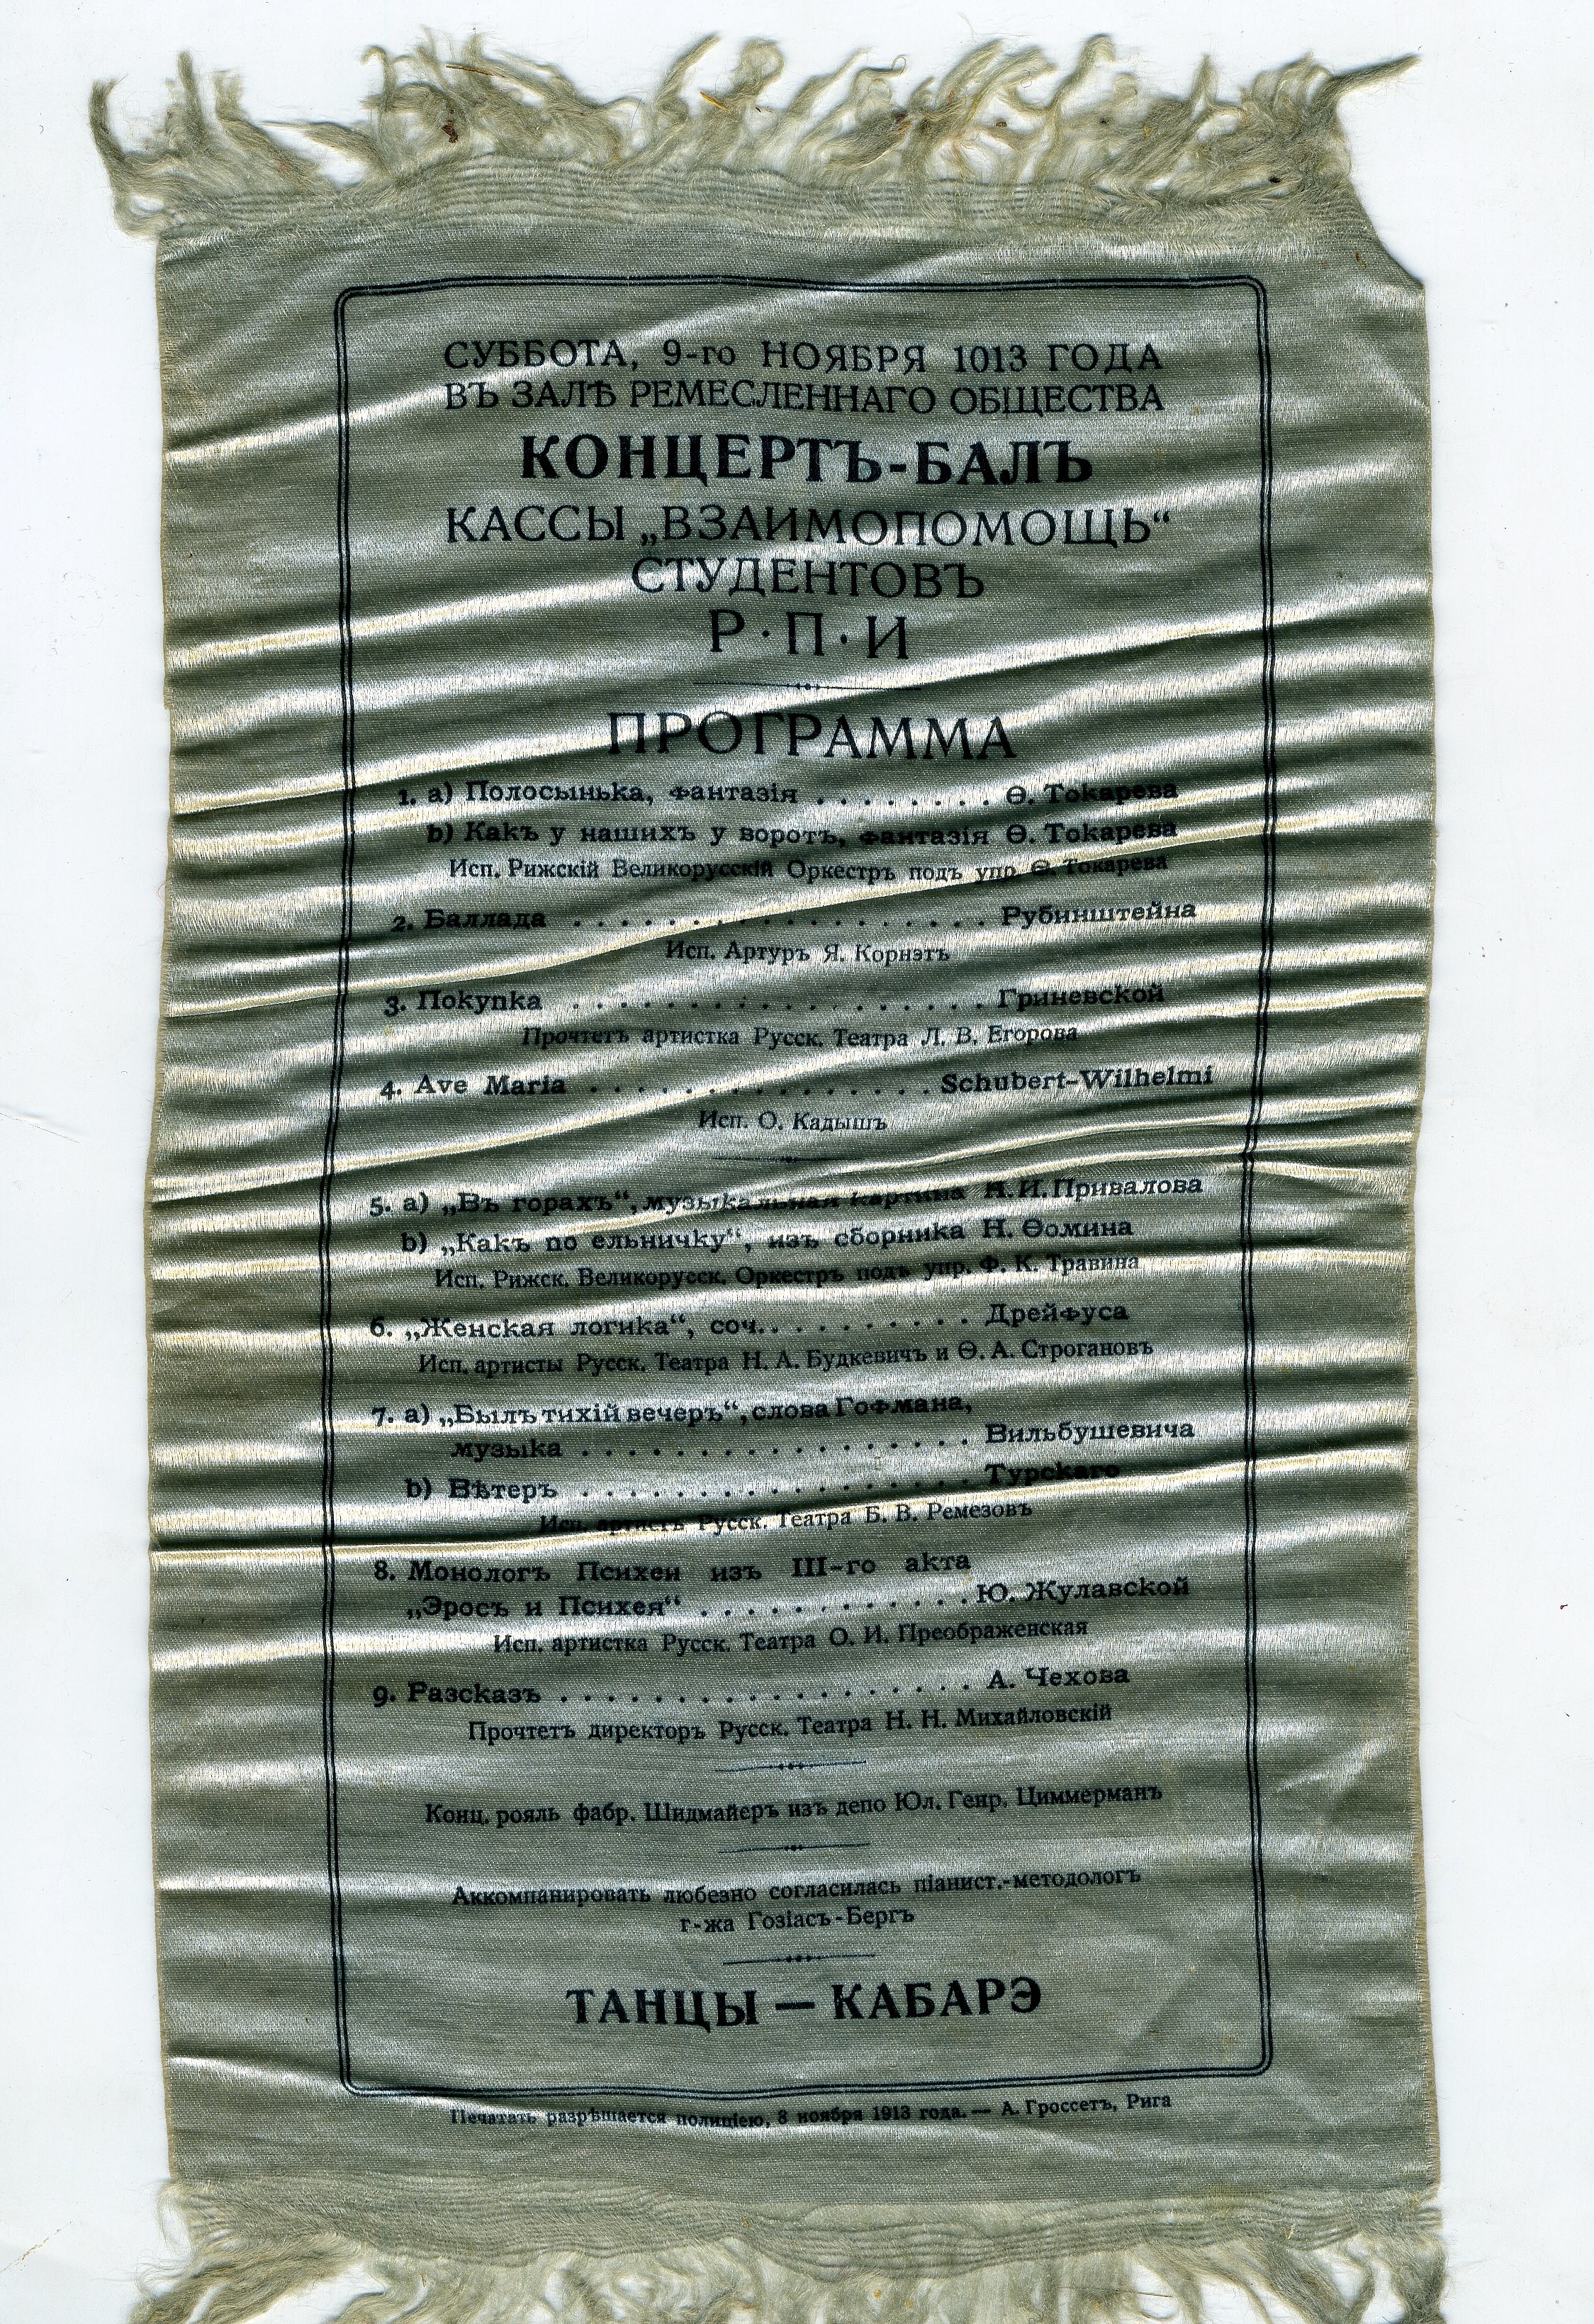 Rīgas Politehniskā institūta „Studentu savstarpējās palīdzības kases” koncerta un balles programma 1913.gada.